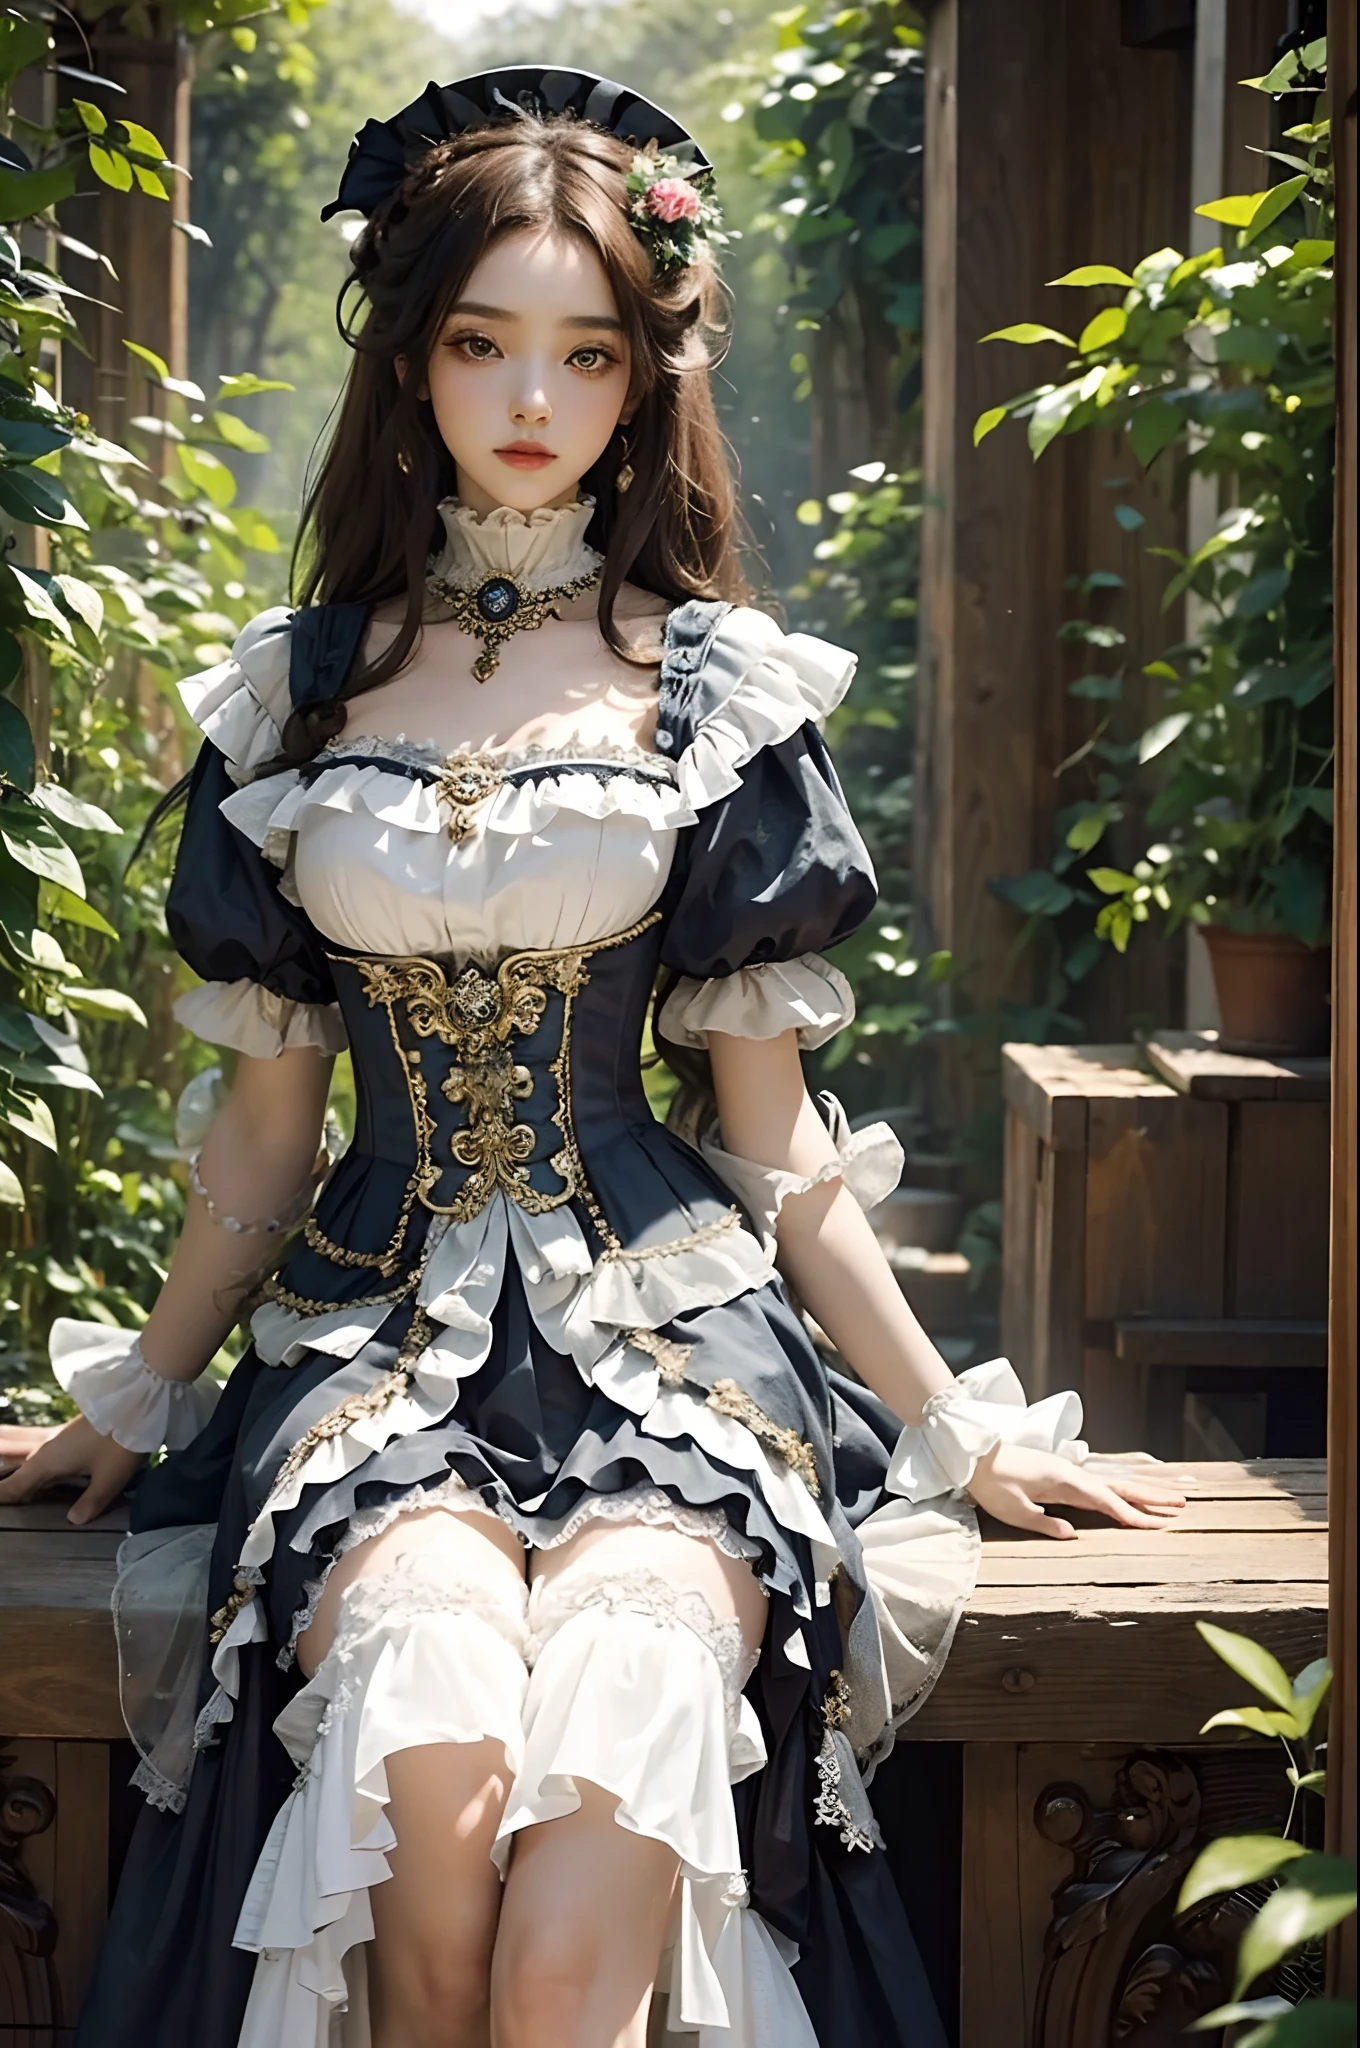 (걸작), (최고의 품질), (완벽한 몸), 여자 1명, 놀라운 아름다움, 아름다운 소녀, 빅토리아 시대의 미적 의상, 긴 드레스, 고대의